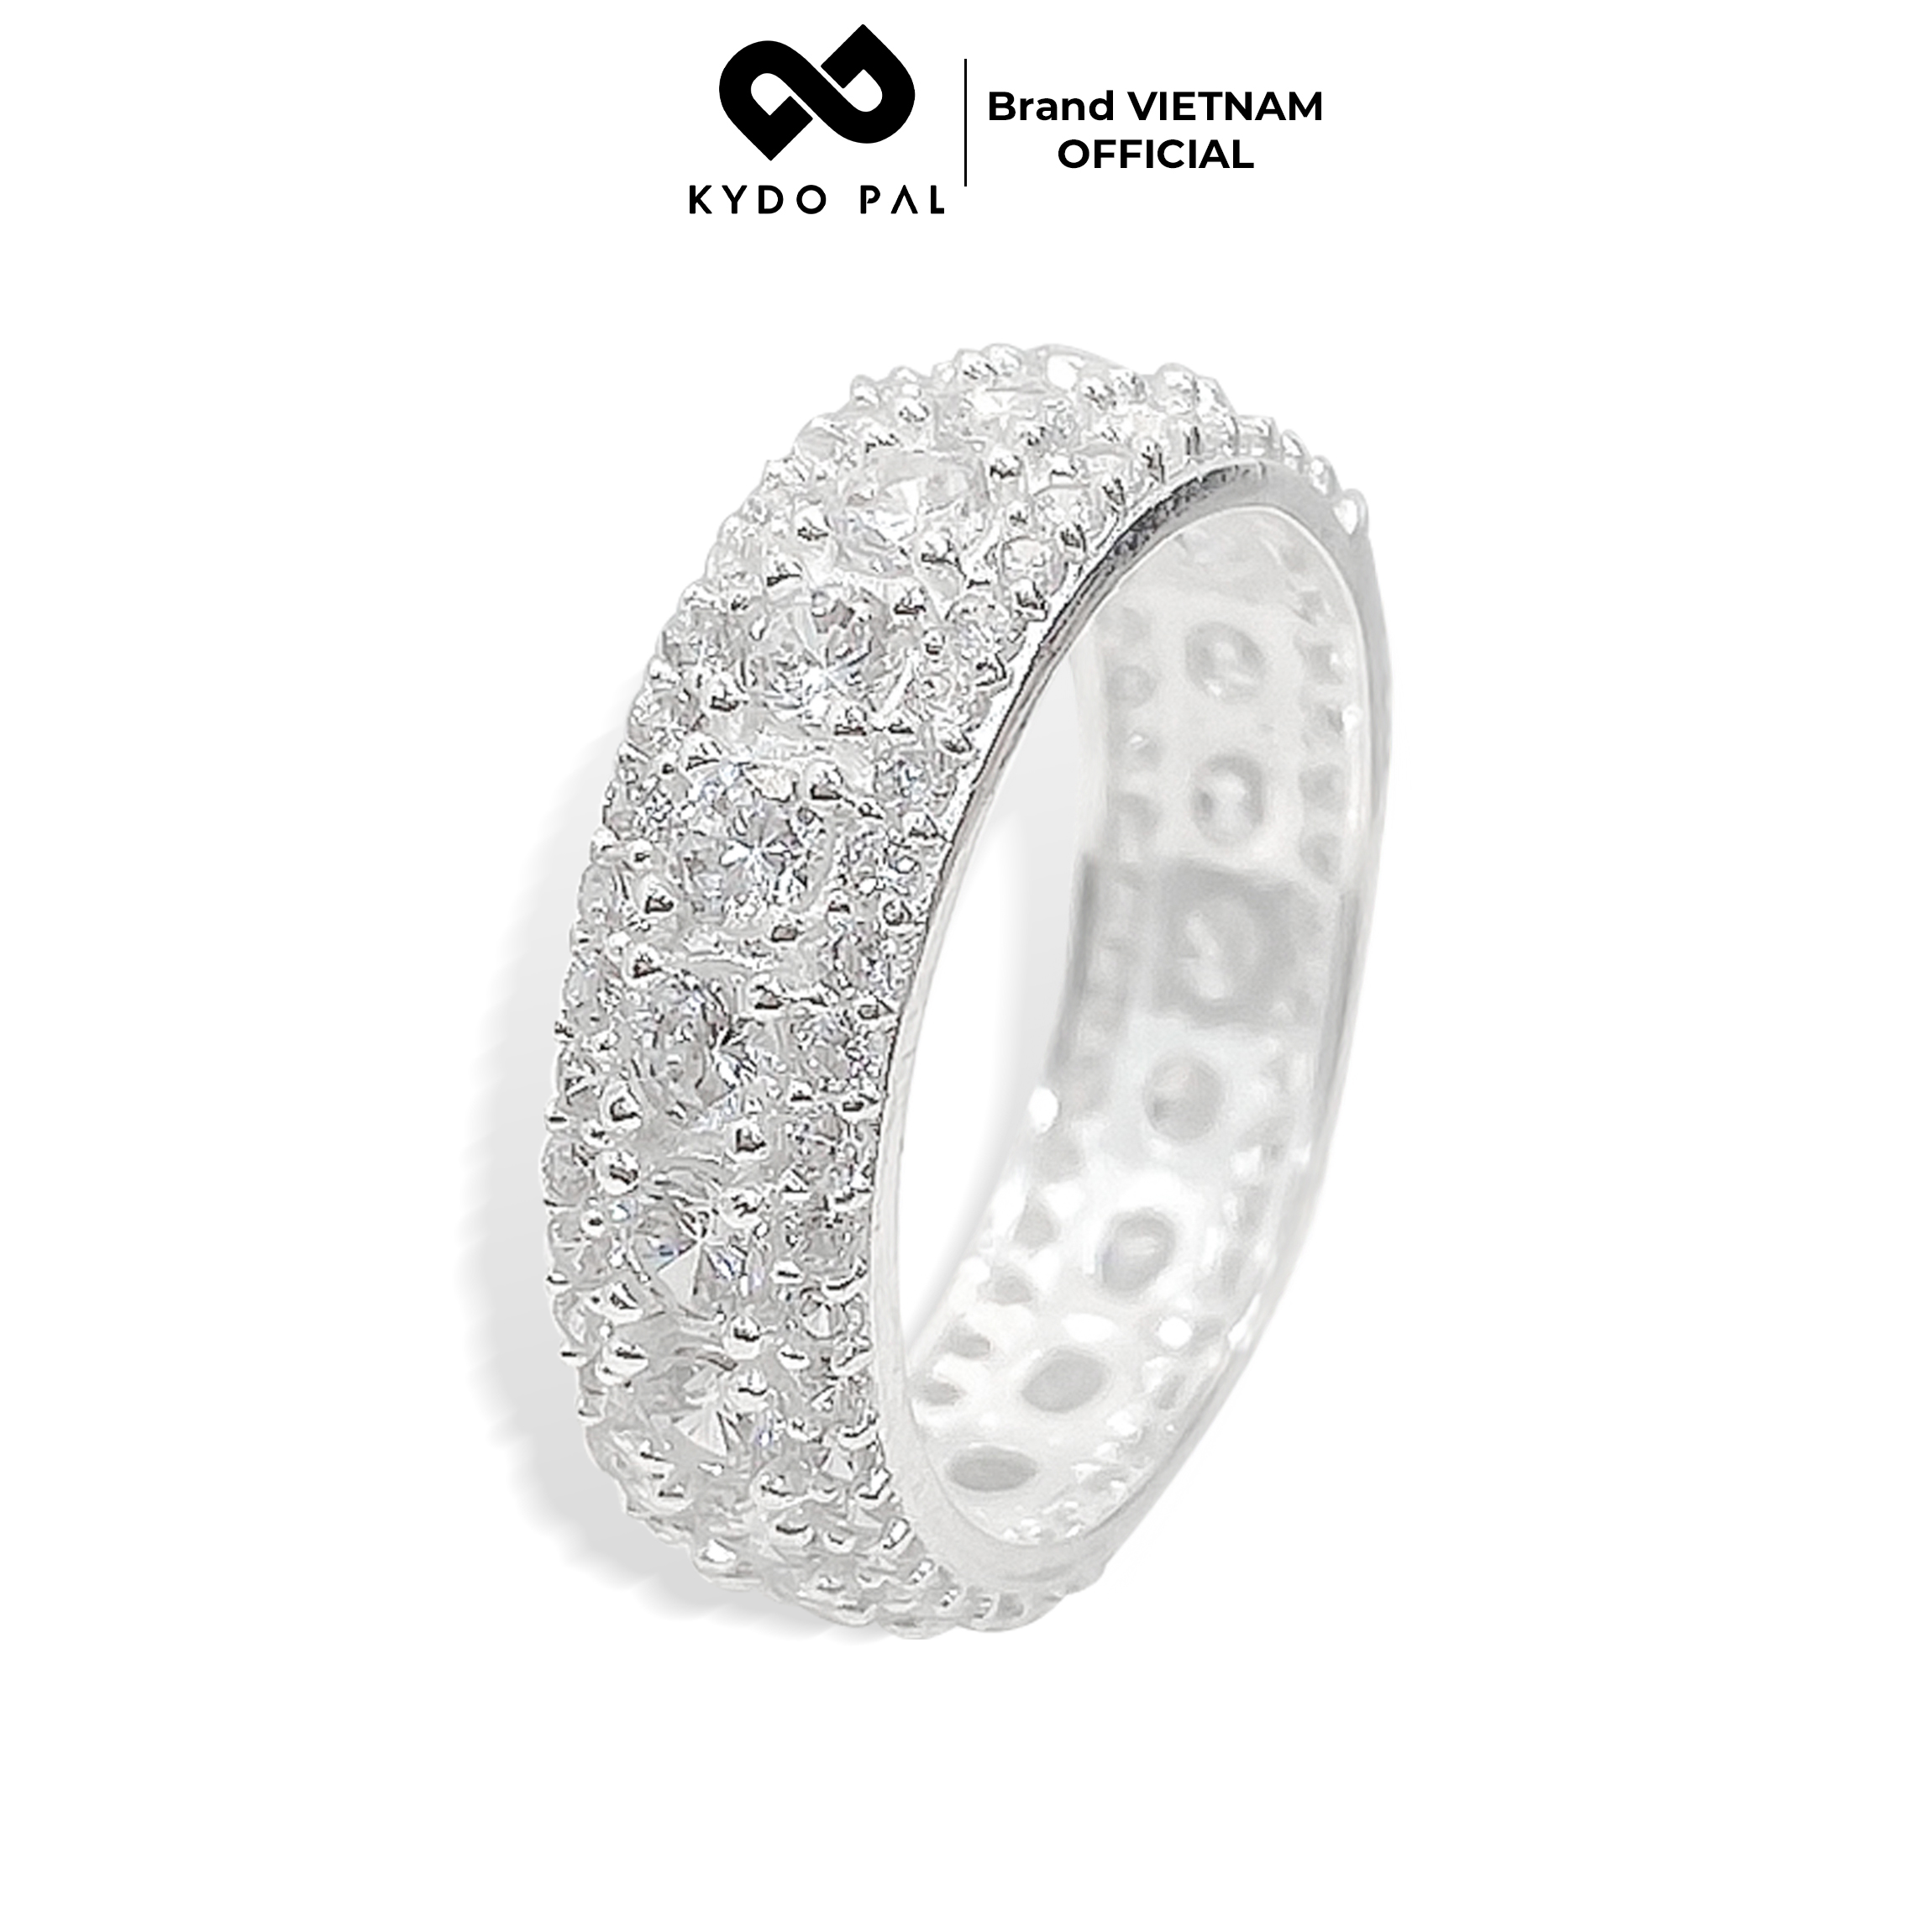 Nhẫn bạc nữ KYDOPAL đính full đá bạc ý 925 trang sức bạc cao cấp – 9N15